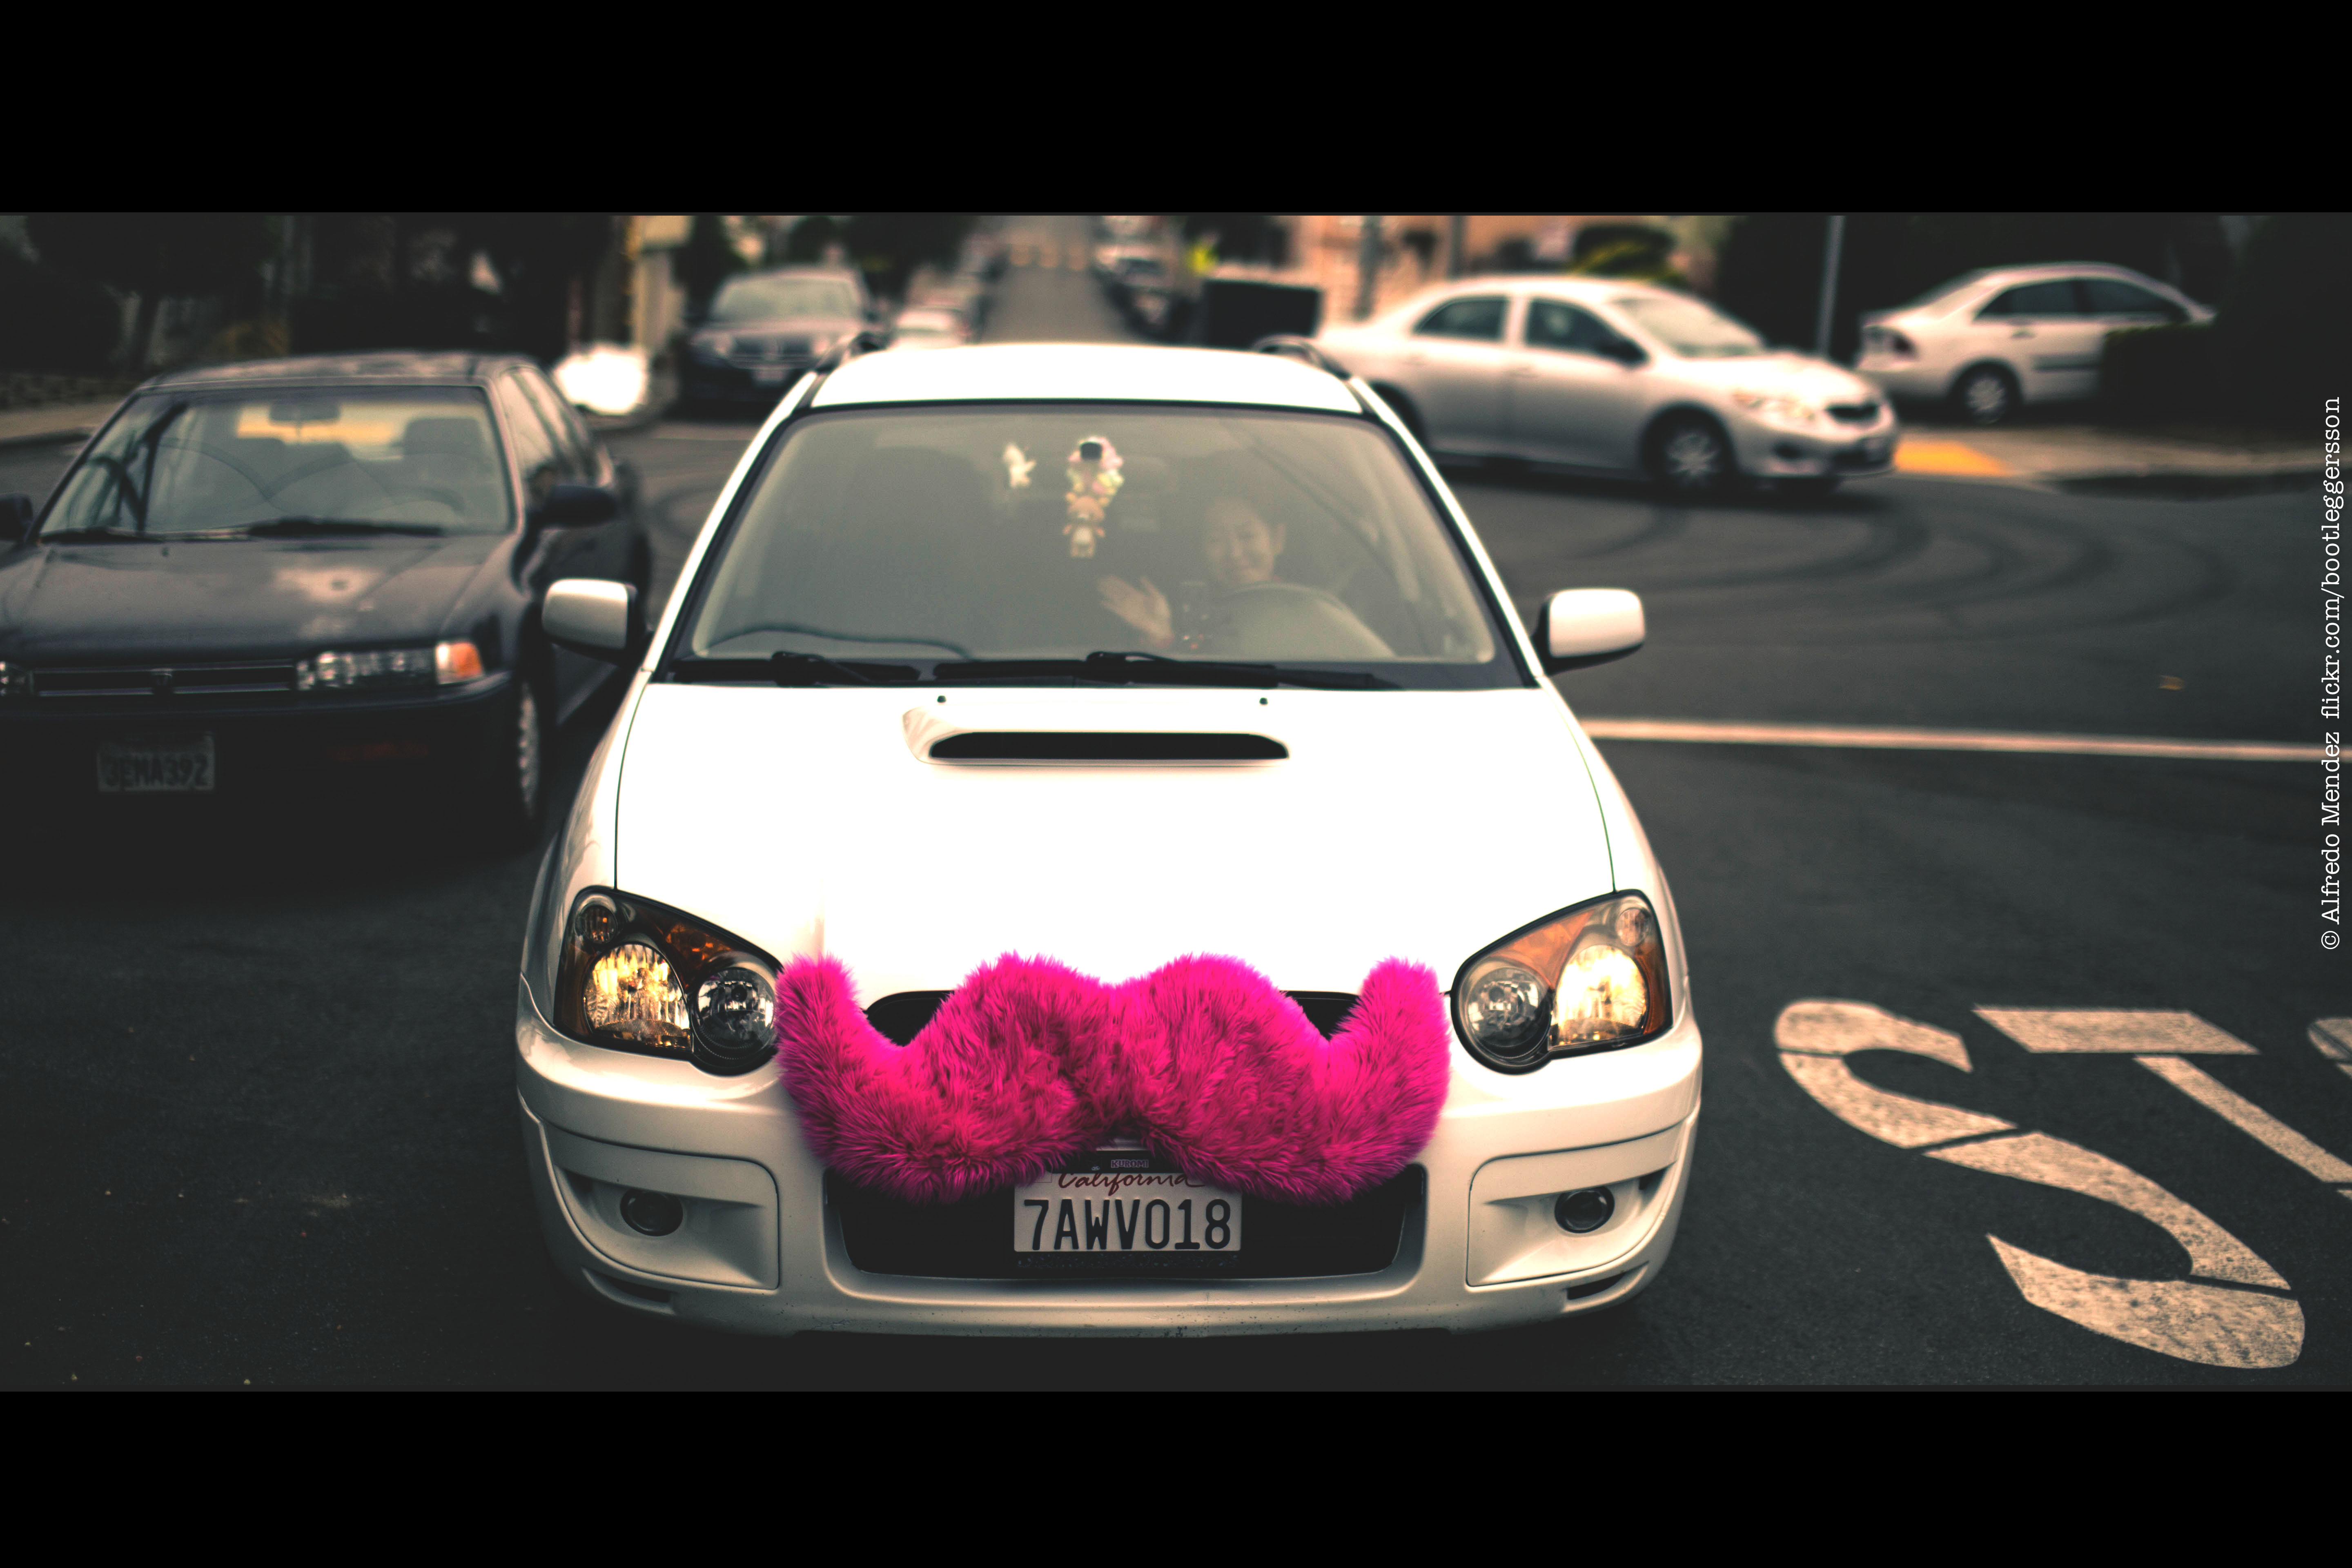 Una fotografía muestra un automóvil con un bigote grande, borroso y rosa pegado a la parrilla delantera del auto.